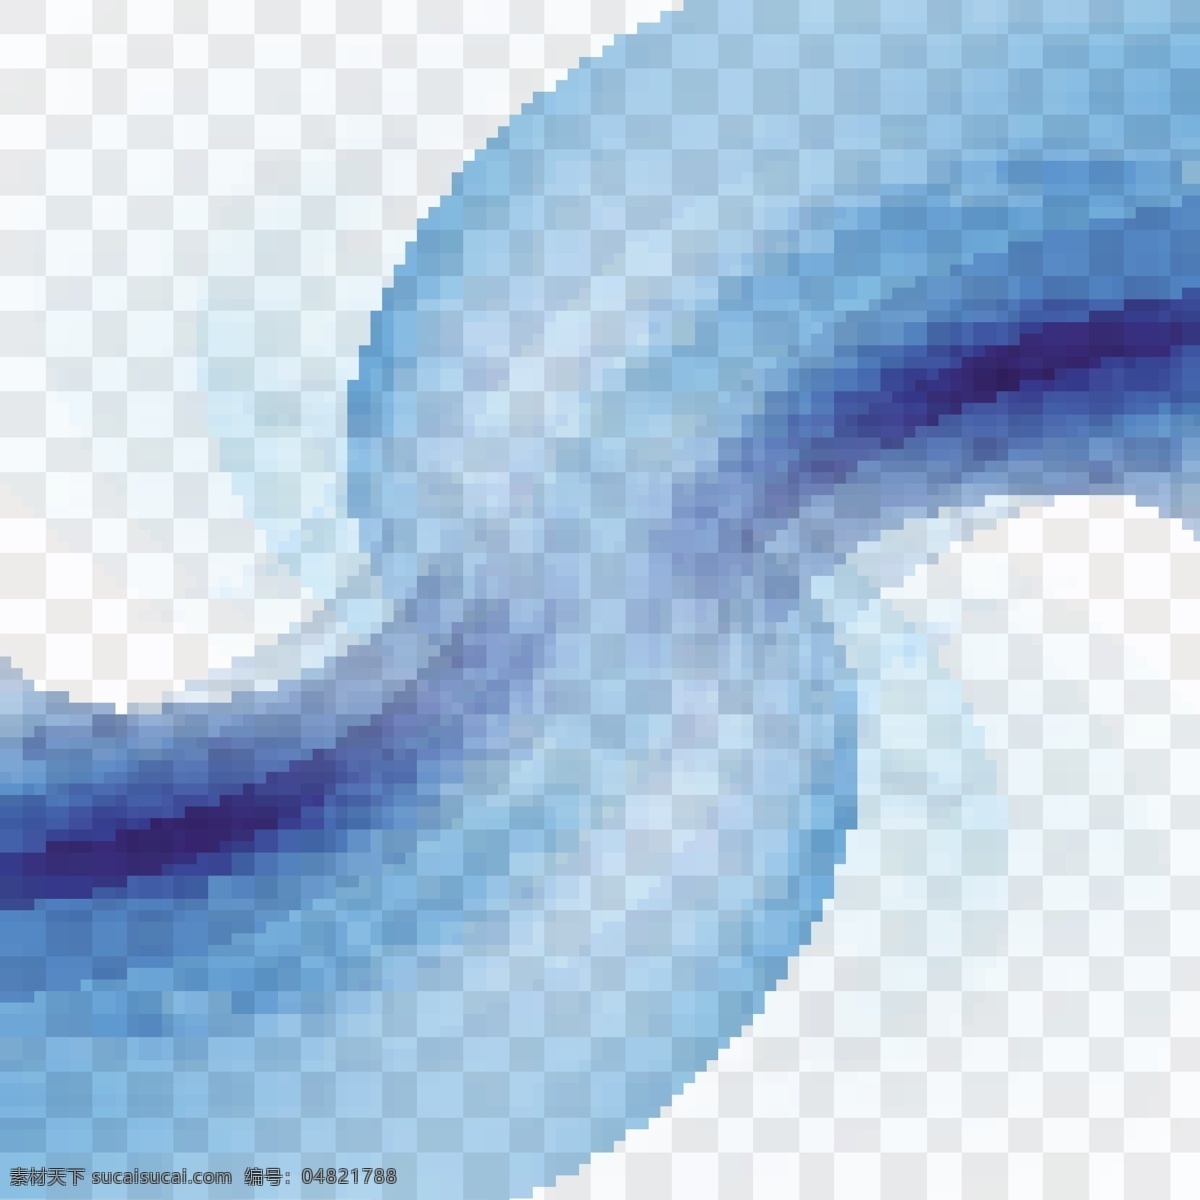 浮动 蓝色 波浪 背景 抽象 模板 形状 烟雾 现代 抽象的形状 波浪状 柔软 有光泽 波浪背景 环境 波浪形